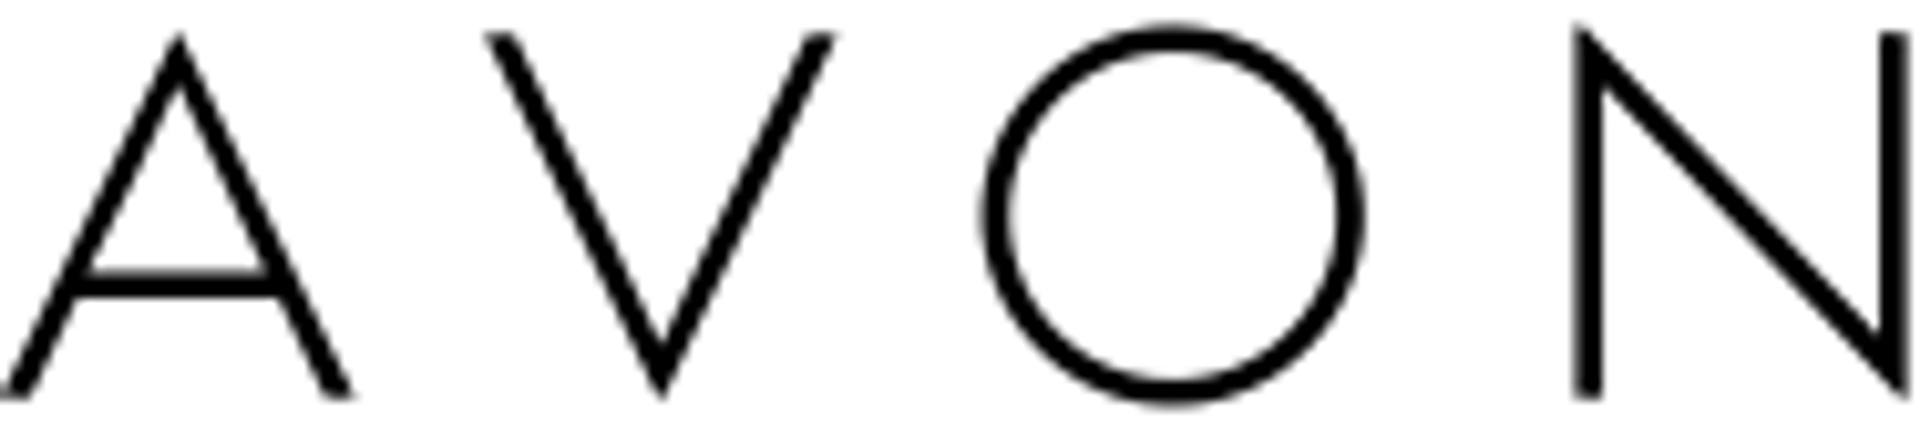 AVON logo de circulaires